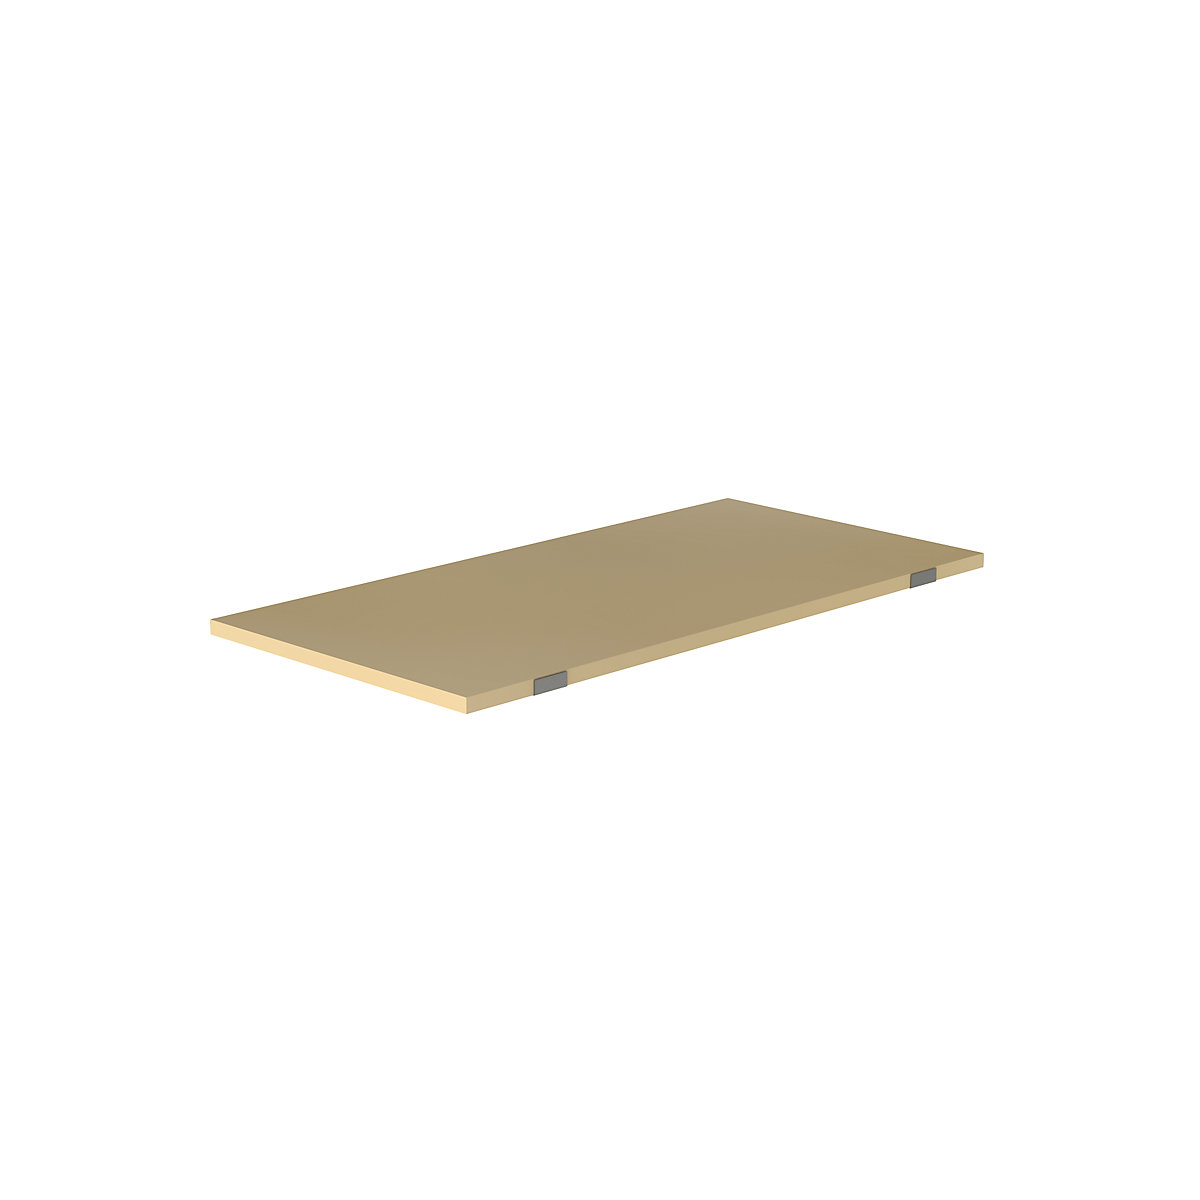 Shelf for pallet shelf unit – eurokraft pro, moulded chipboard, for beam length 1825 mm, shelf unit depth 900 mm